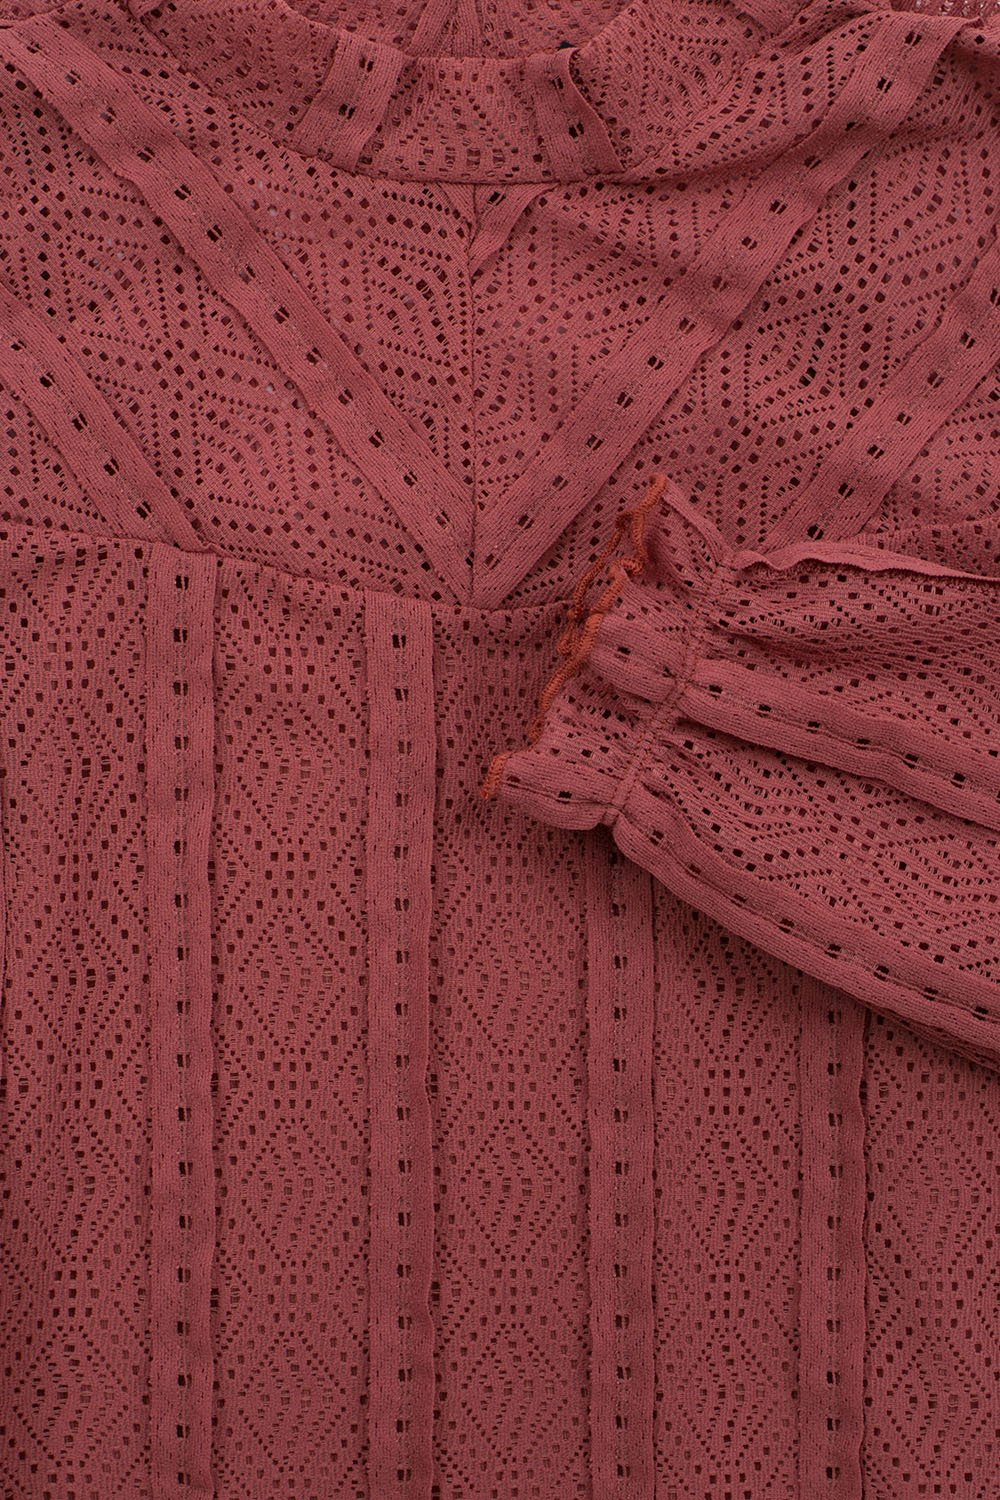 Meisjes 10Sixteen lace top van LOOXS 10sixteen in de kleur boho blush in maat 176.